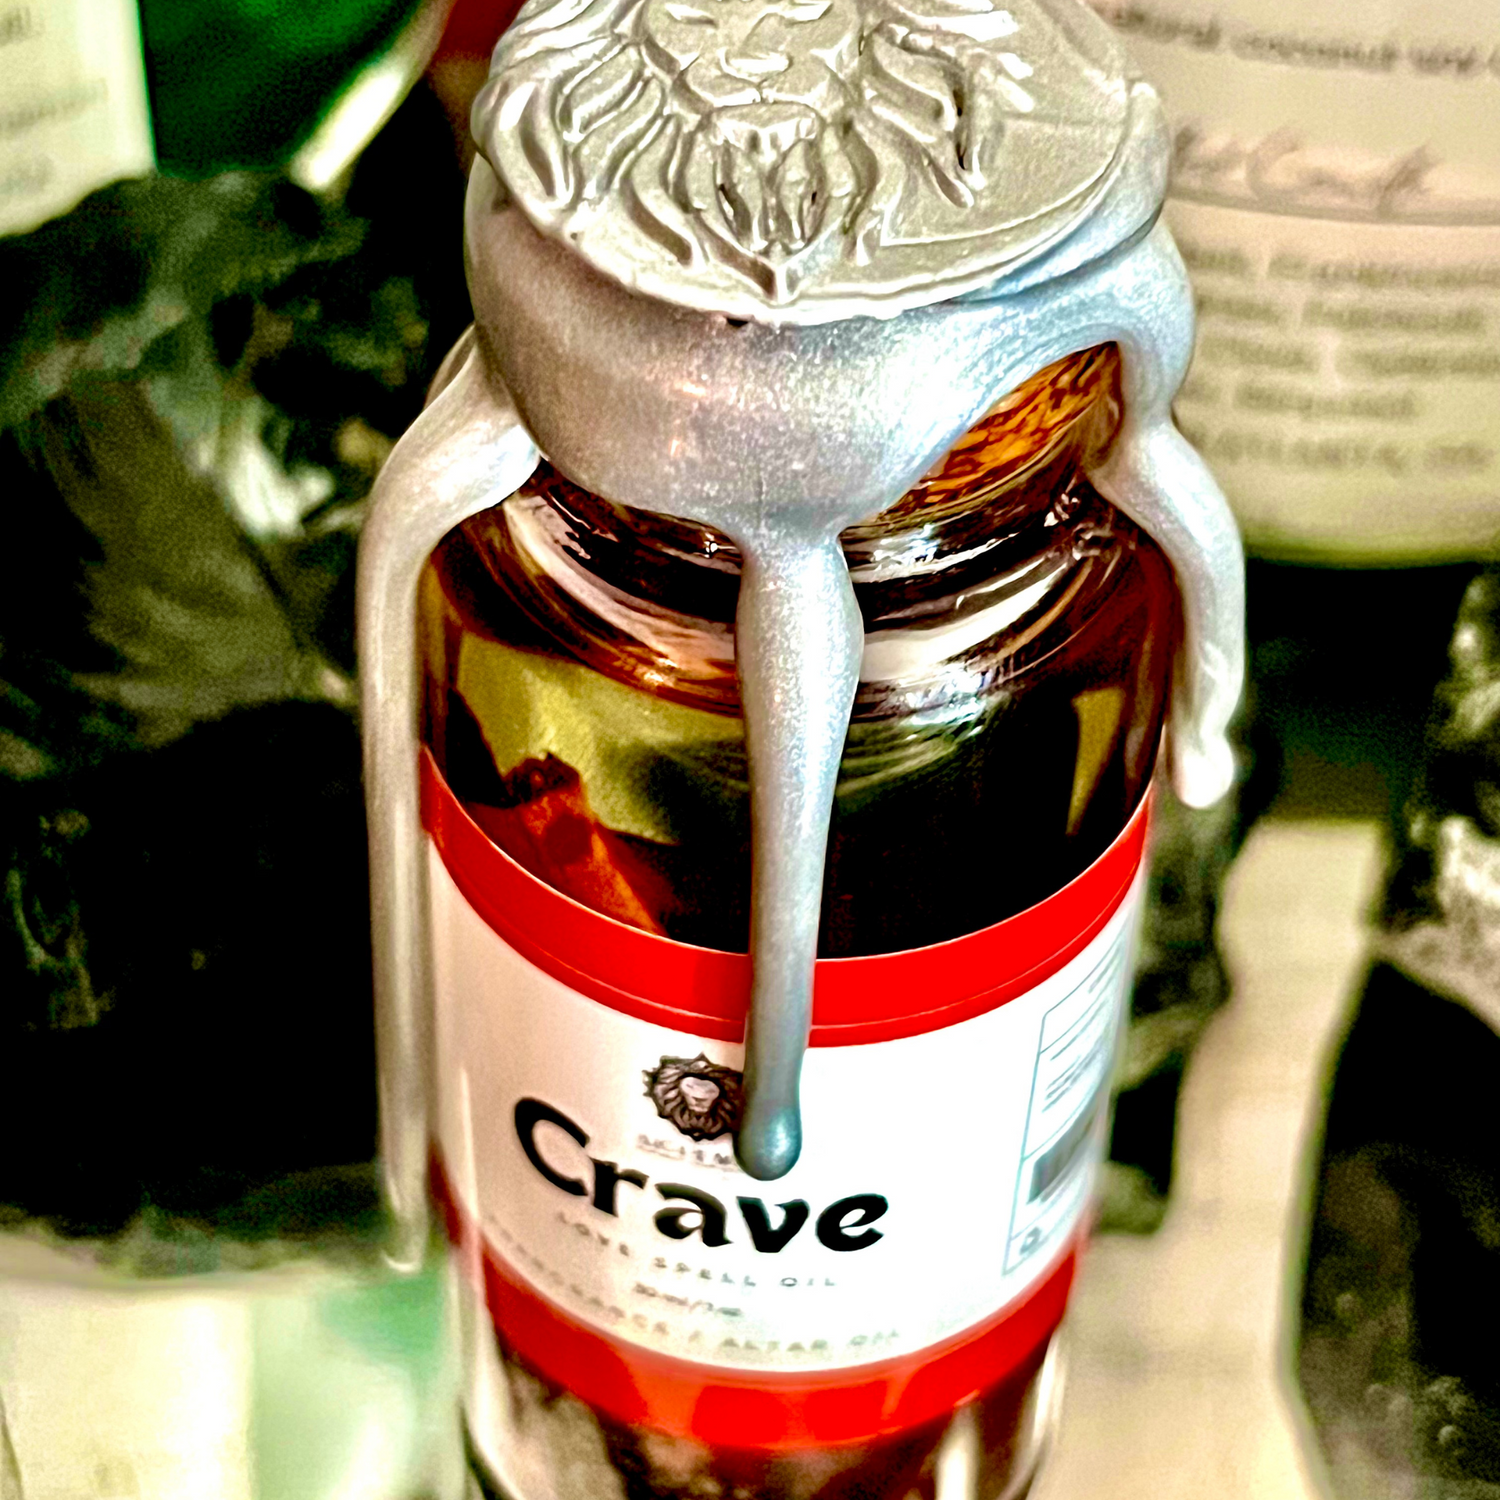 Alchemy7 | Crave - Love Spell Oil - Aceite Aromatico de hechizo de amor - Fragrance Oil